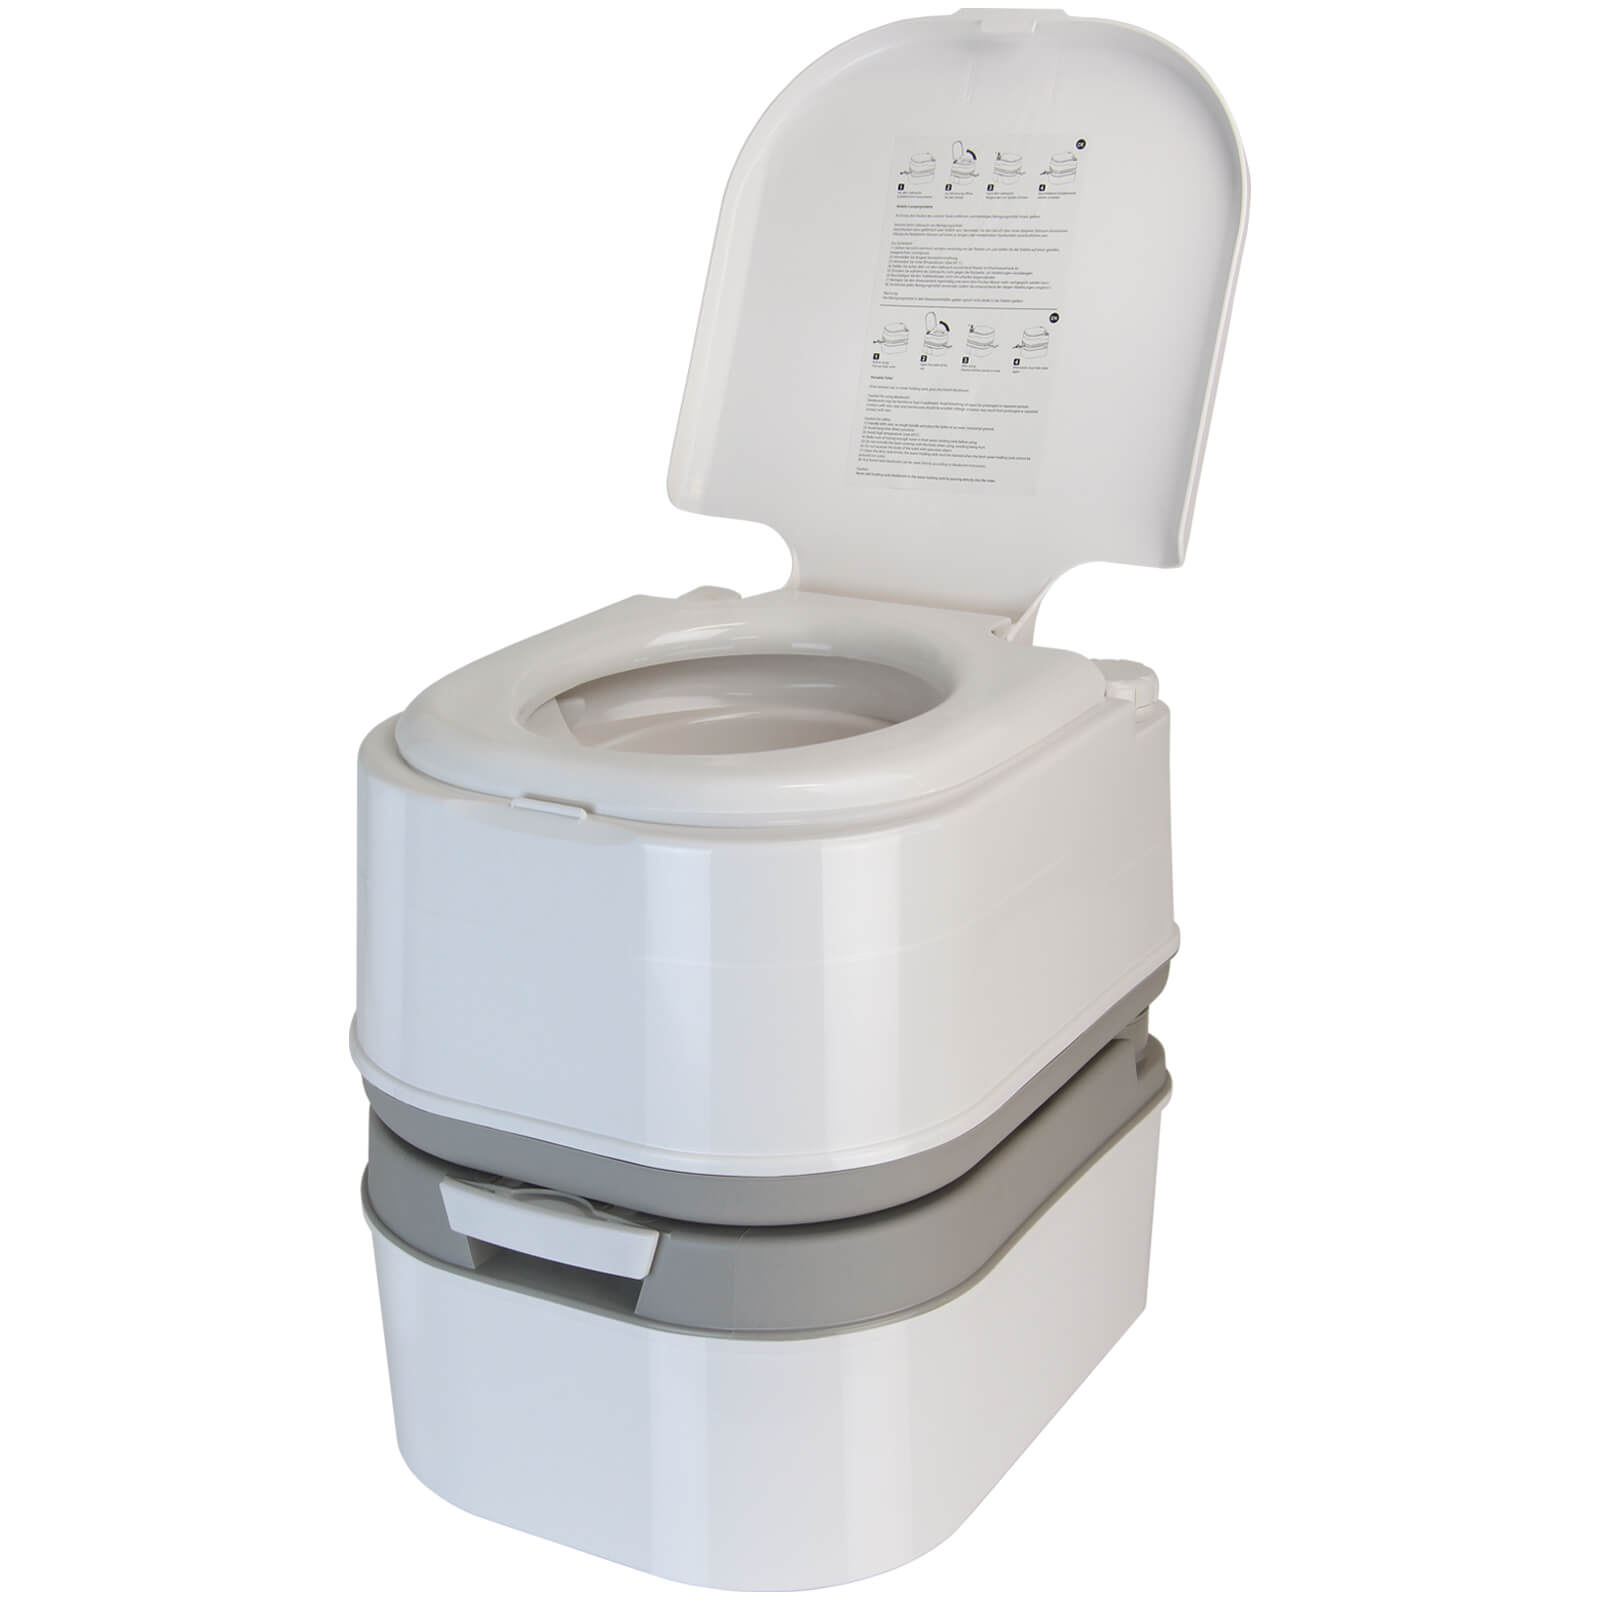 BB Sport Toilette Portatile WC Chimico da 24 l con pompa a pistone e porta  carta-igienica altezza della seduta 44 cm